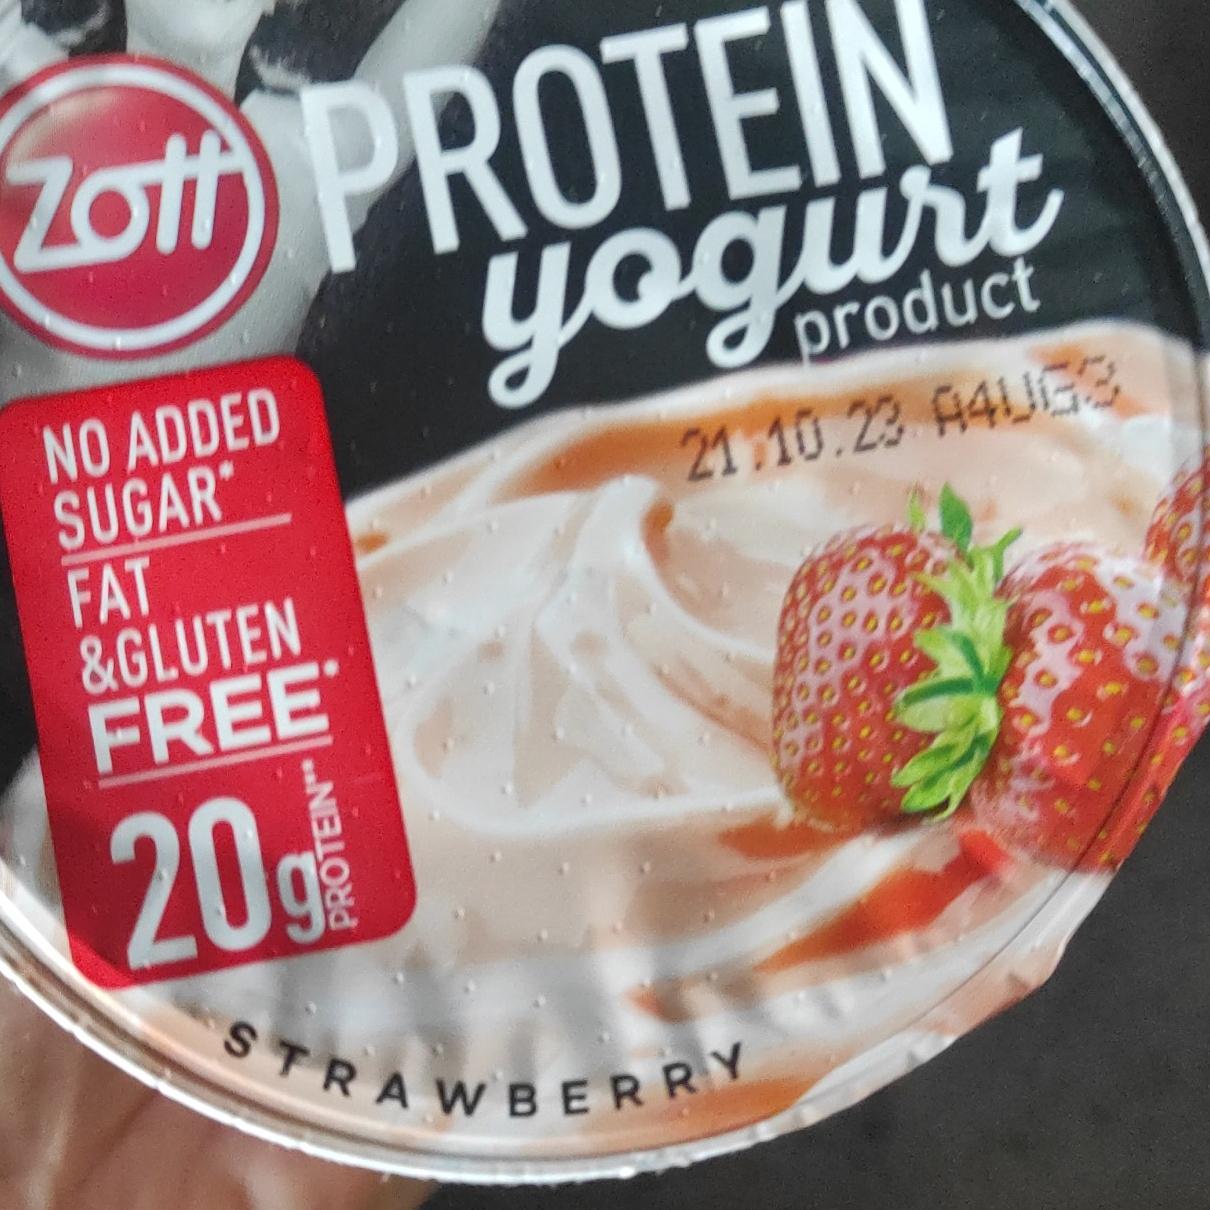 Zdjęcia - Protein yogurt product Strawberry Zott